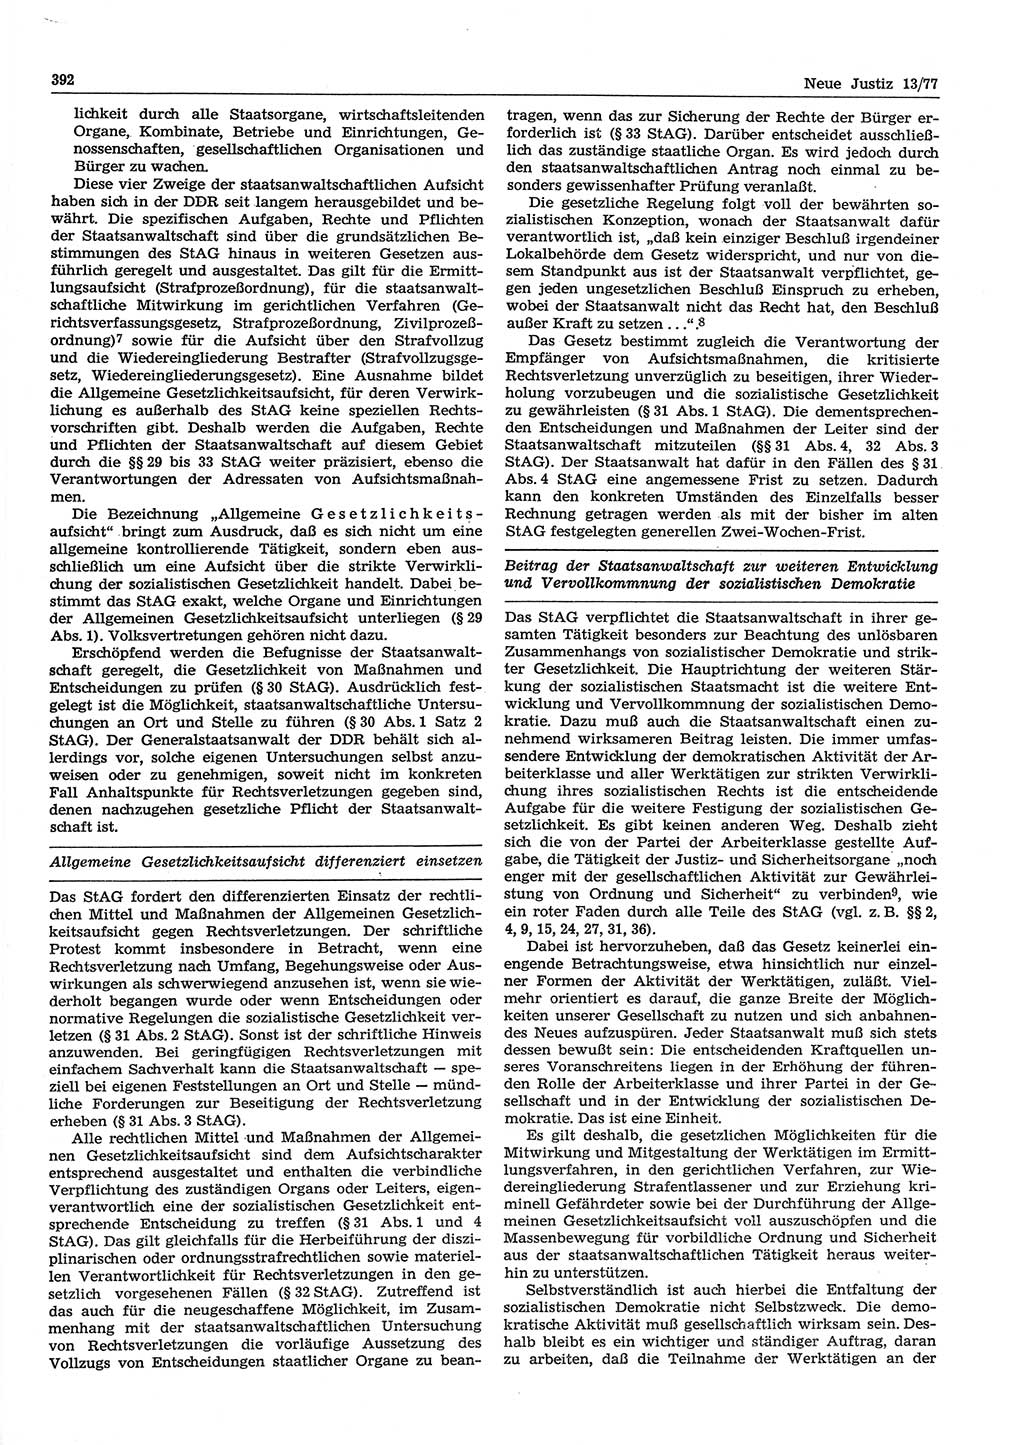 Neue Justiz (NJ), Zeitschrift für Recht und Rechtswissenschaft-Zeitschrift, sozialistisches Recht und Gesetzlichkeit, 31. Jahrgang 1977, Seite 392 (NJ DDR 1977, S. 392)